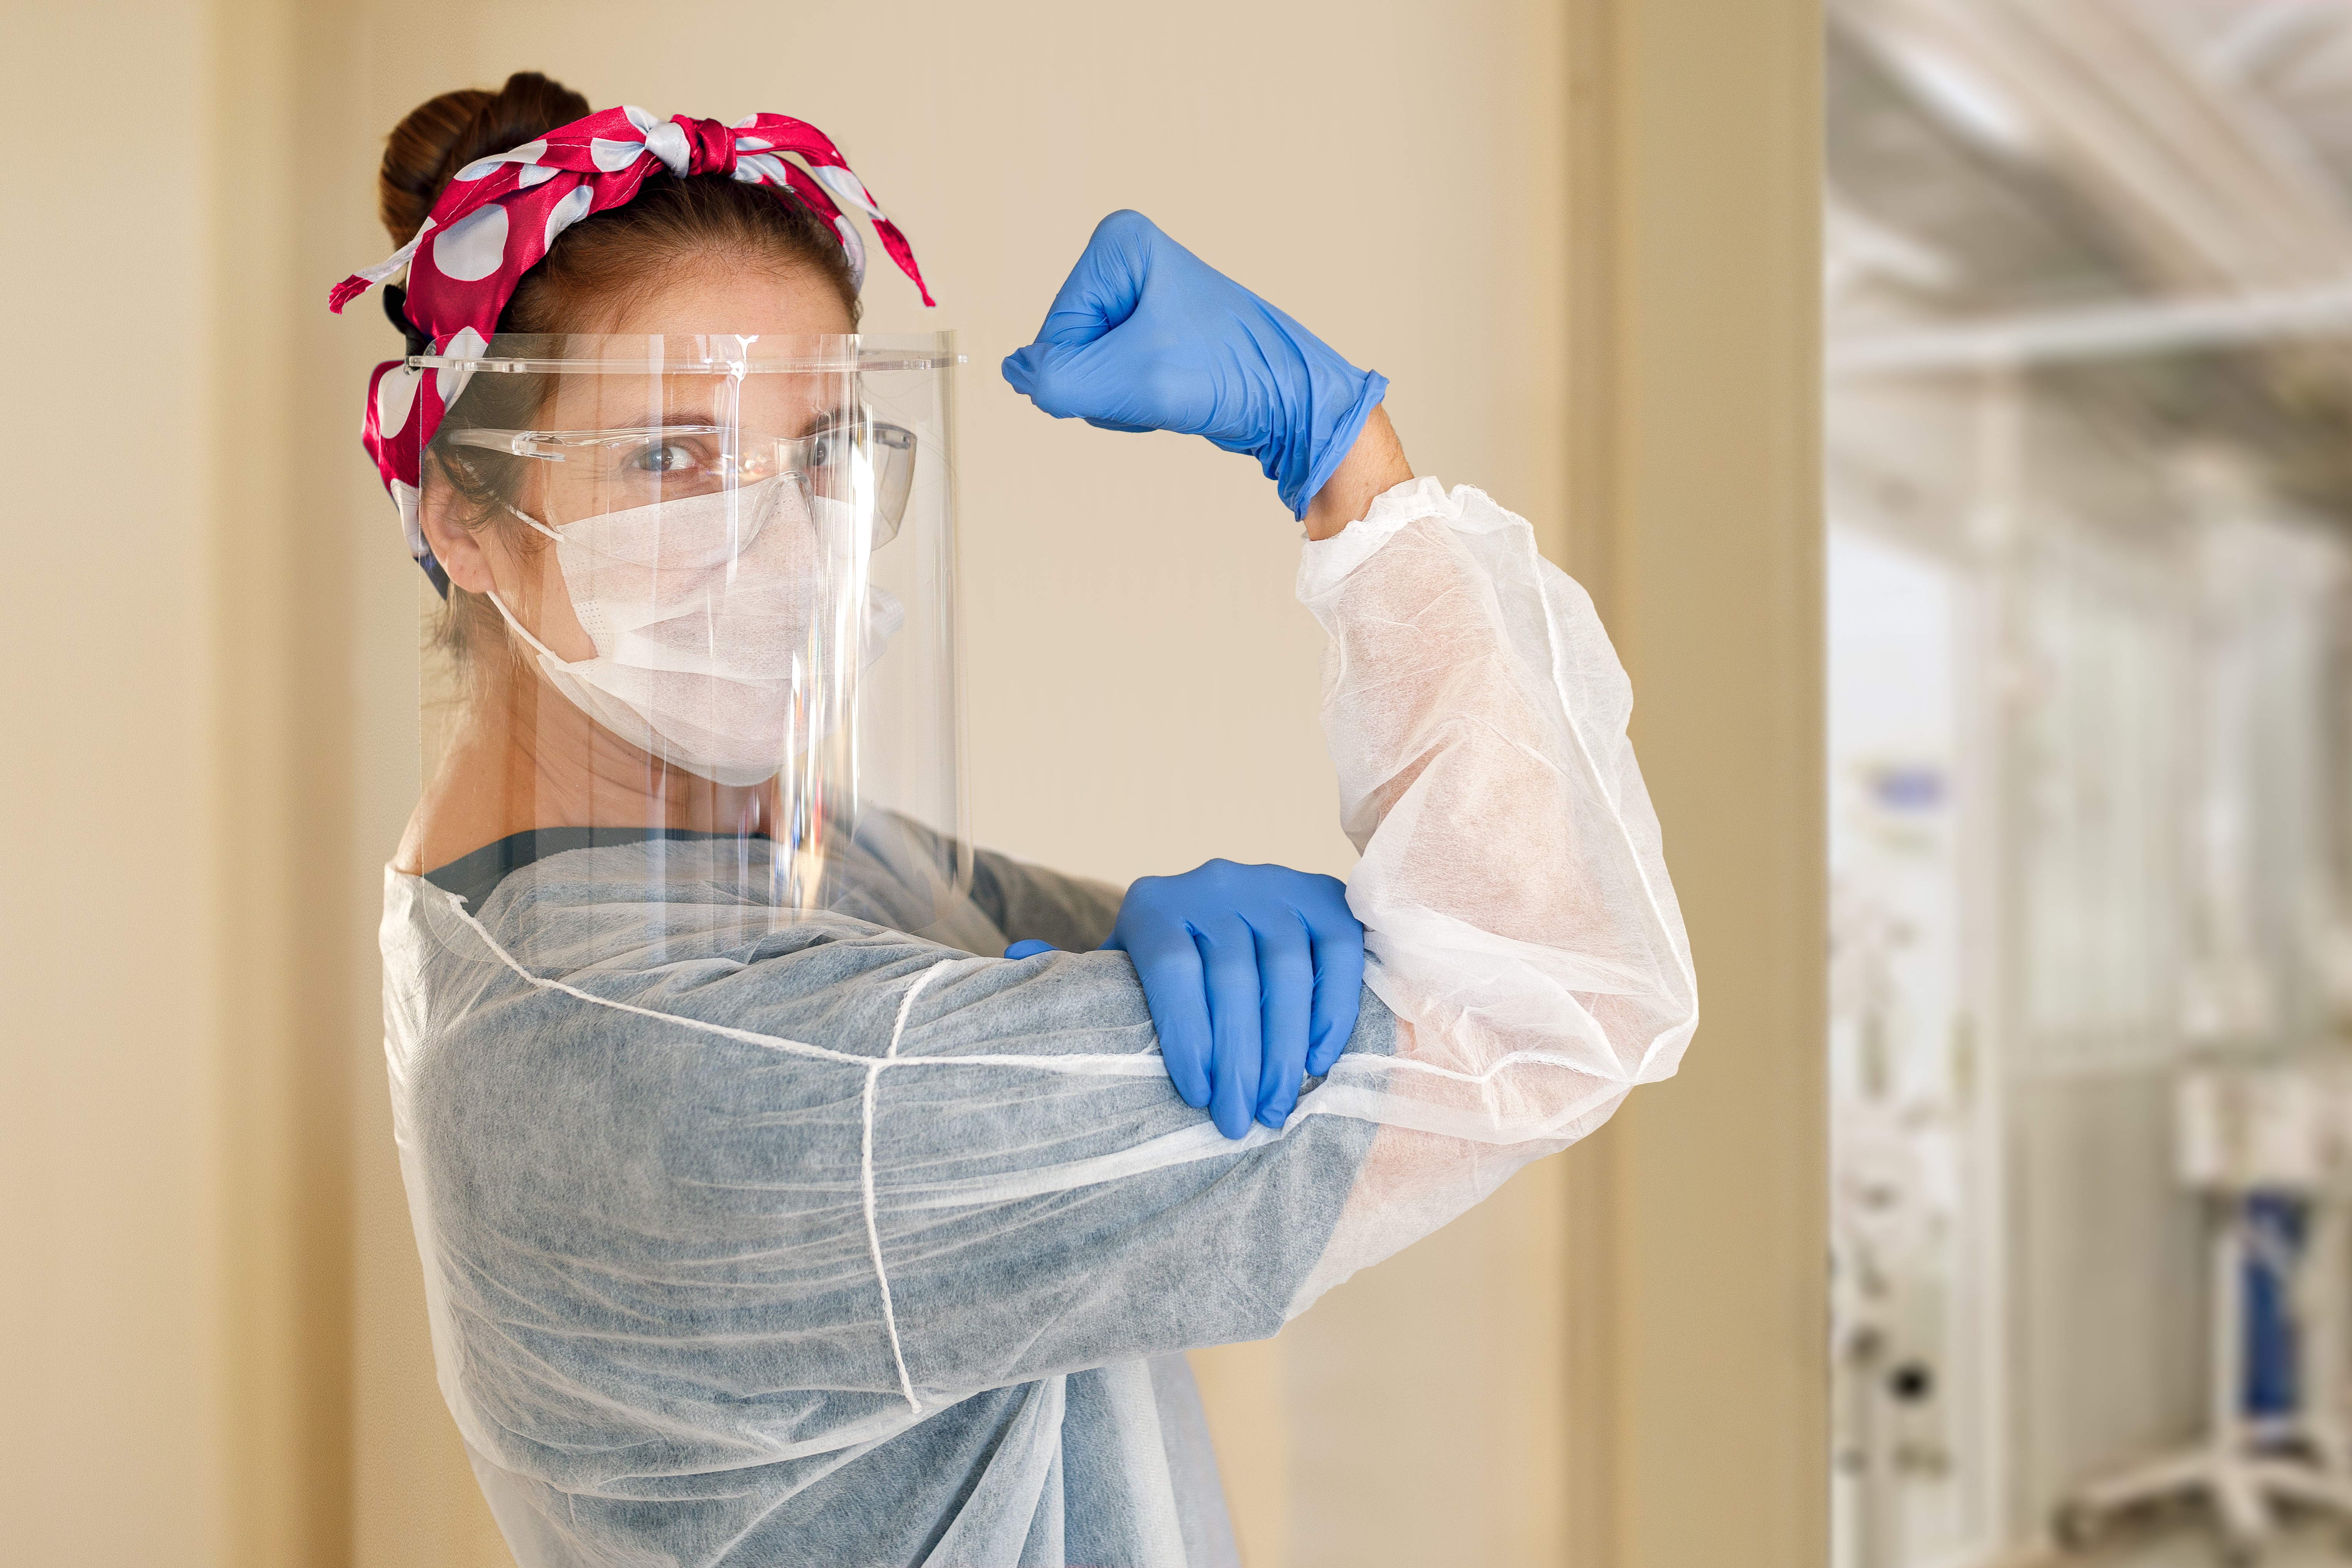 Viseiras podem ajudar à prevenir contaminação por coronavírus, mas não servem para nada sem o uso da máscara (Foto: Getty Images)